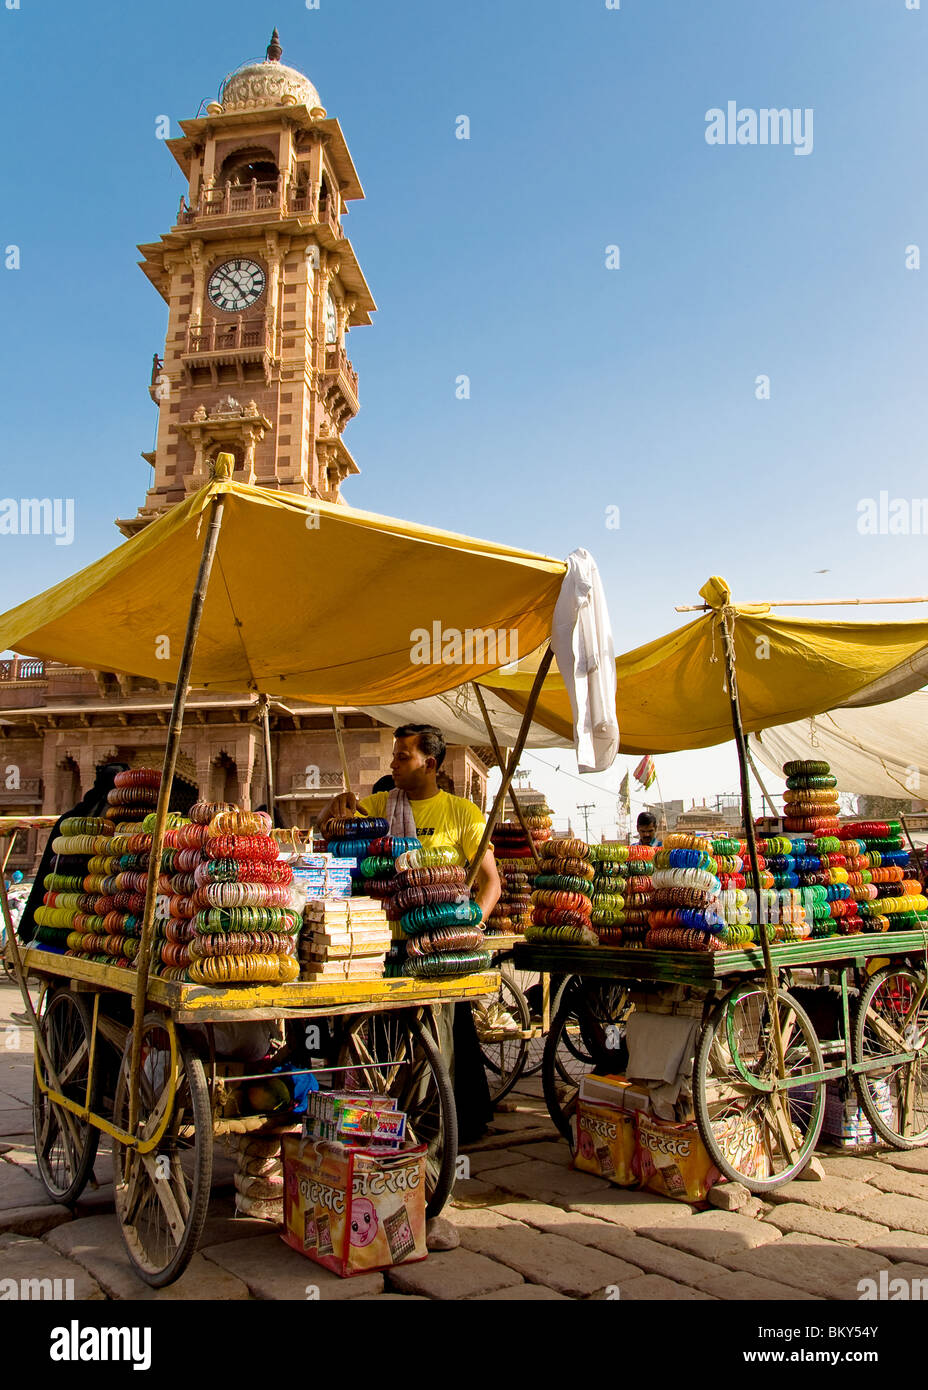 Los puestos de mercado y la Torre del Reloj, Jodhpur, Rajasthan, India Foto de stock